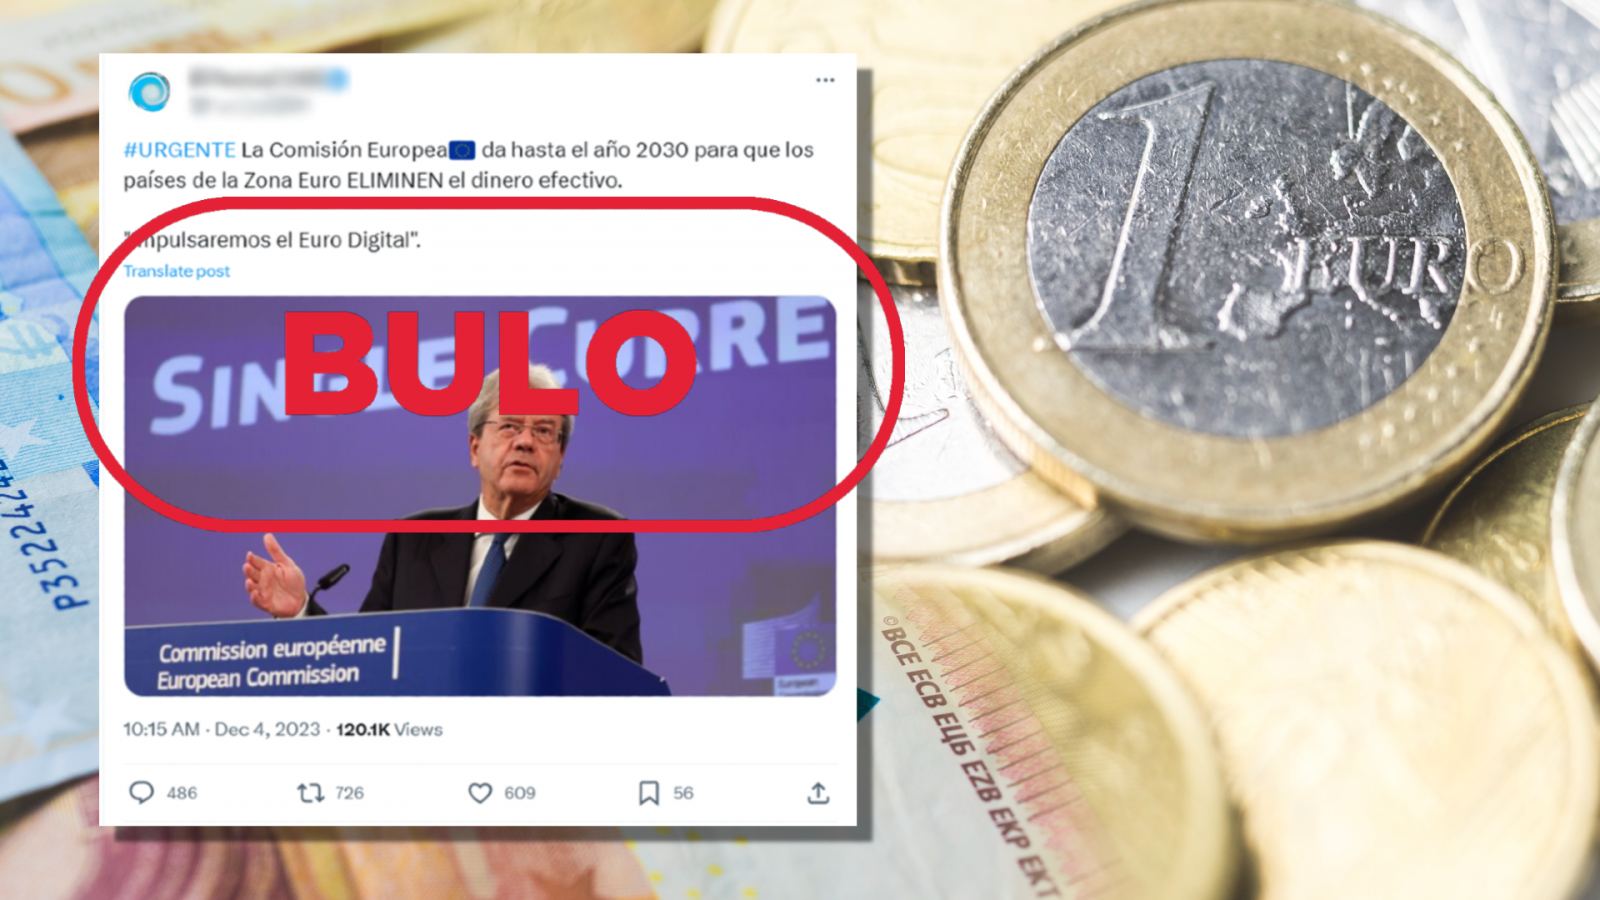 Comisión Europea: Publicación de X que difunde el bulo de que este organismo da de plazo hasta 2030 para eliminar el dinero en efectivo, con el sello Bulo en rojo